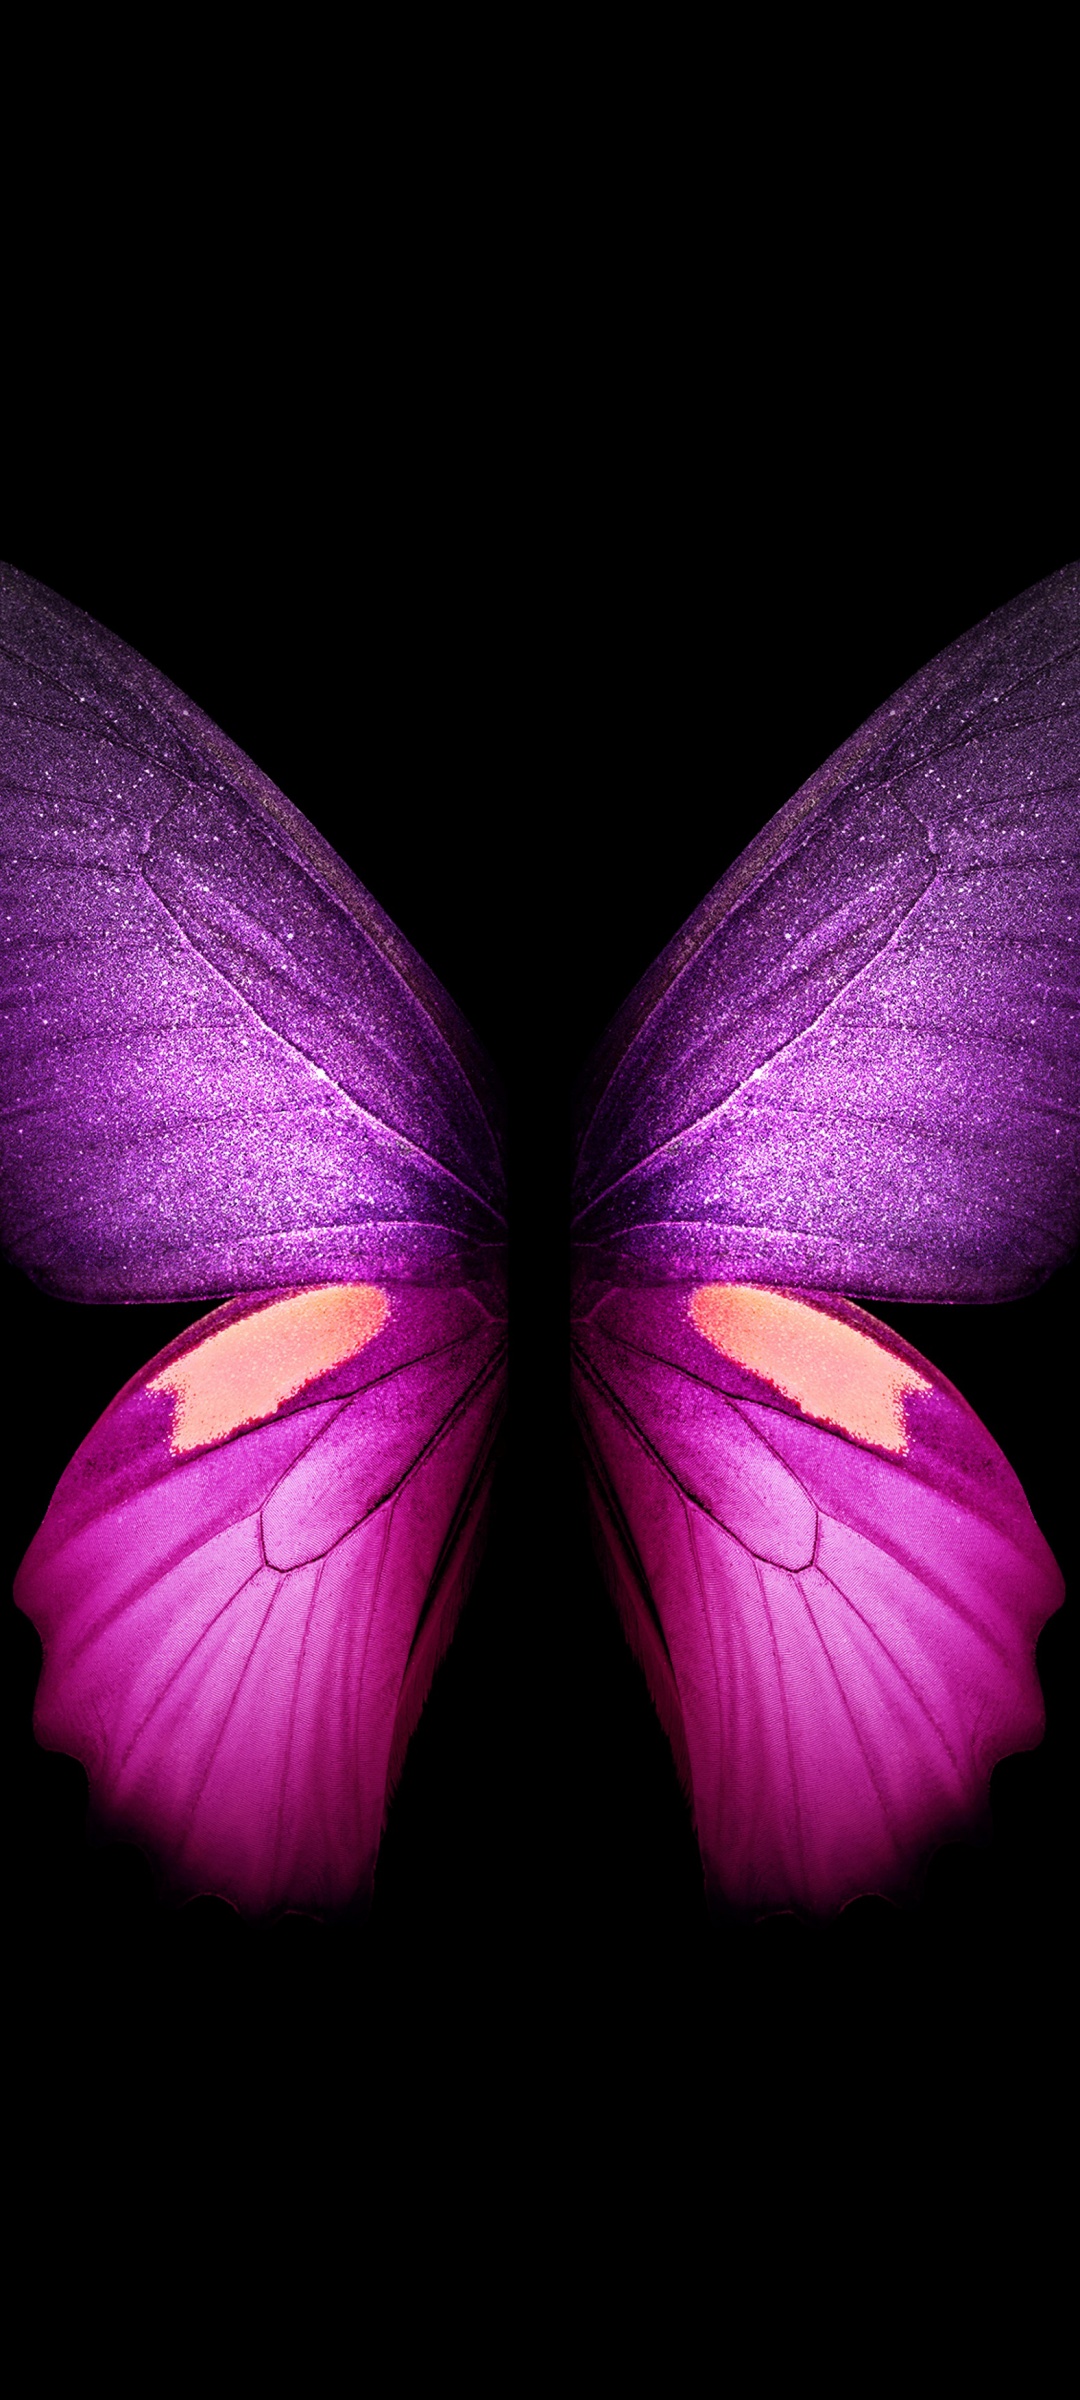 Purple Butterfly 4K Wallpaper, Wings, Black background ...